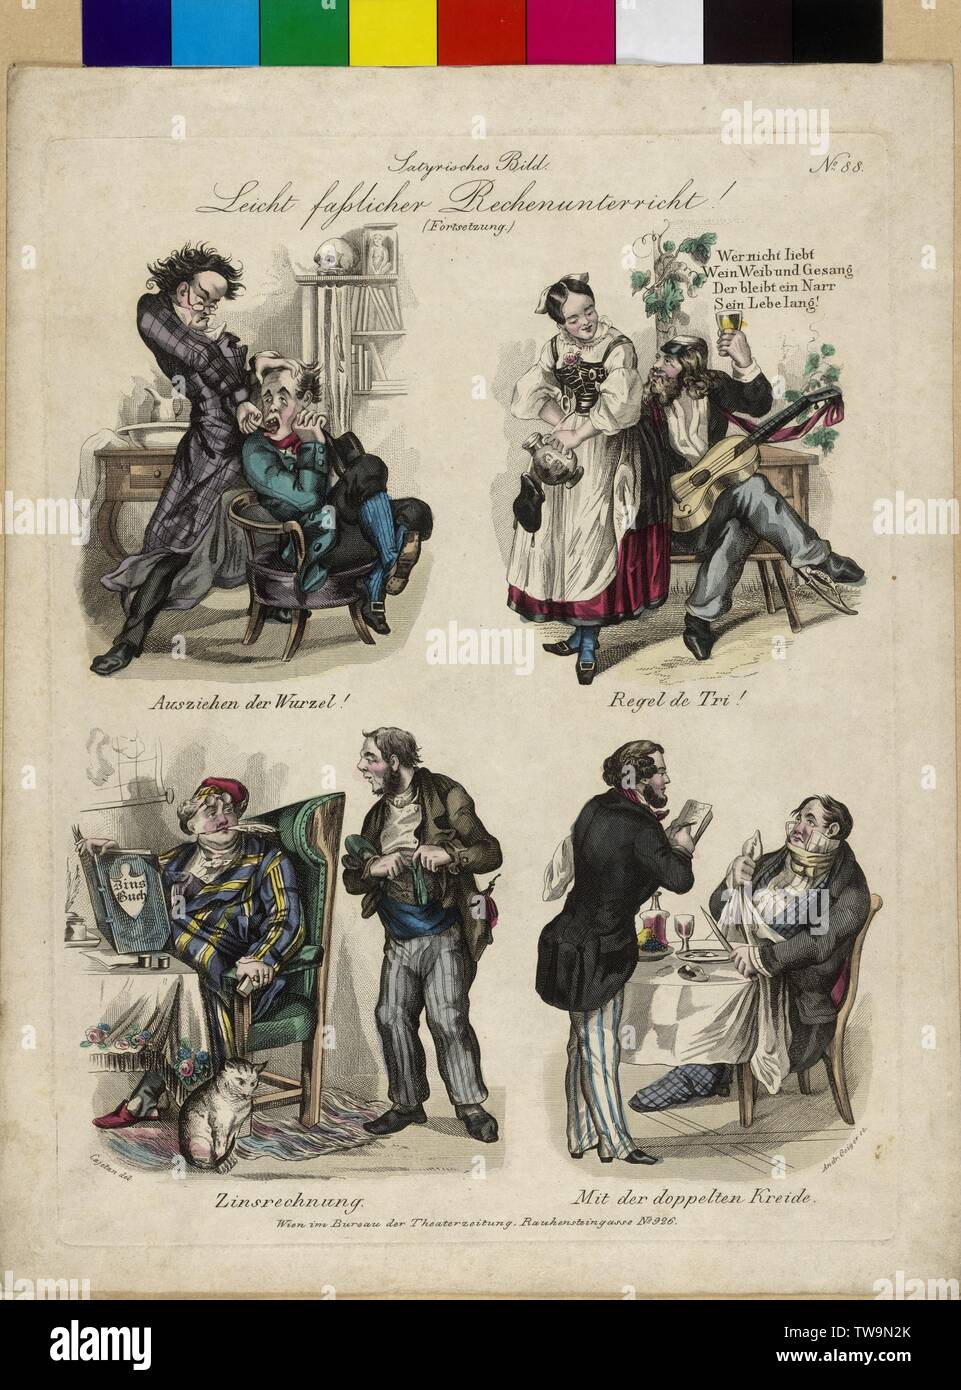 Cajetan, Joseph, satirische Zeichnungen von J. Cajetan, in einen Farbstich von Andreas Geiger dargestellt, von 'Baeuerles Theaterzeitung" (um 1840)", "atyrisches Bild. Leicht fasslicher Rechnen!" Keine 88. (Fortsetzung.), links oben: "Ausziehen der Wurzel!', rechts oben: "Regel de Tri!', links unten: "Zinsrechnung", rechts unten: 'Mit der doppelten Kreide.", - - Not-Available Clearance-Info Additional-Rights Stockfoto